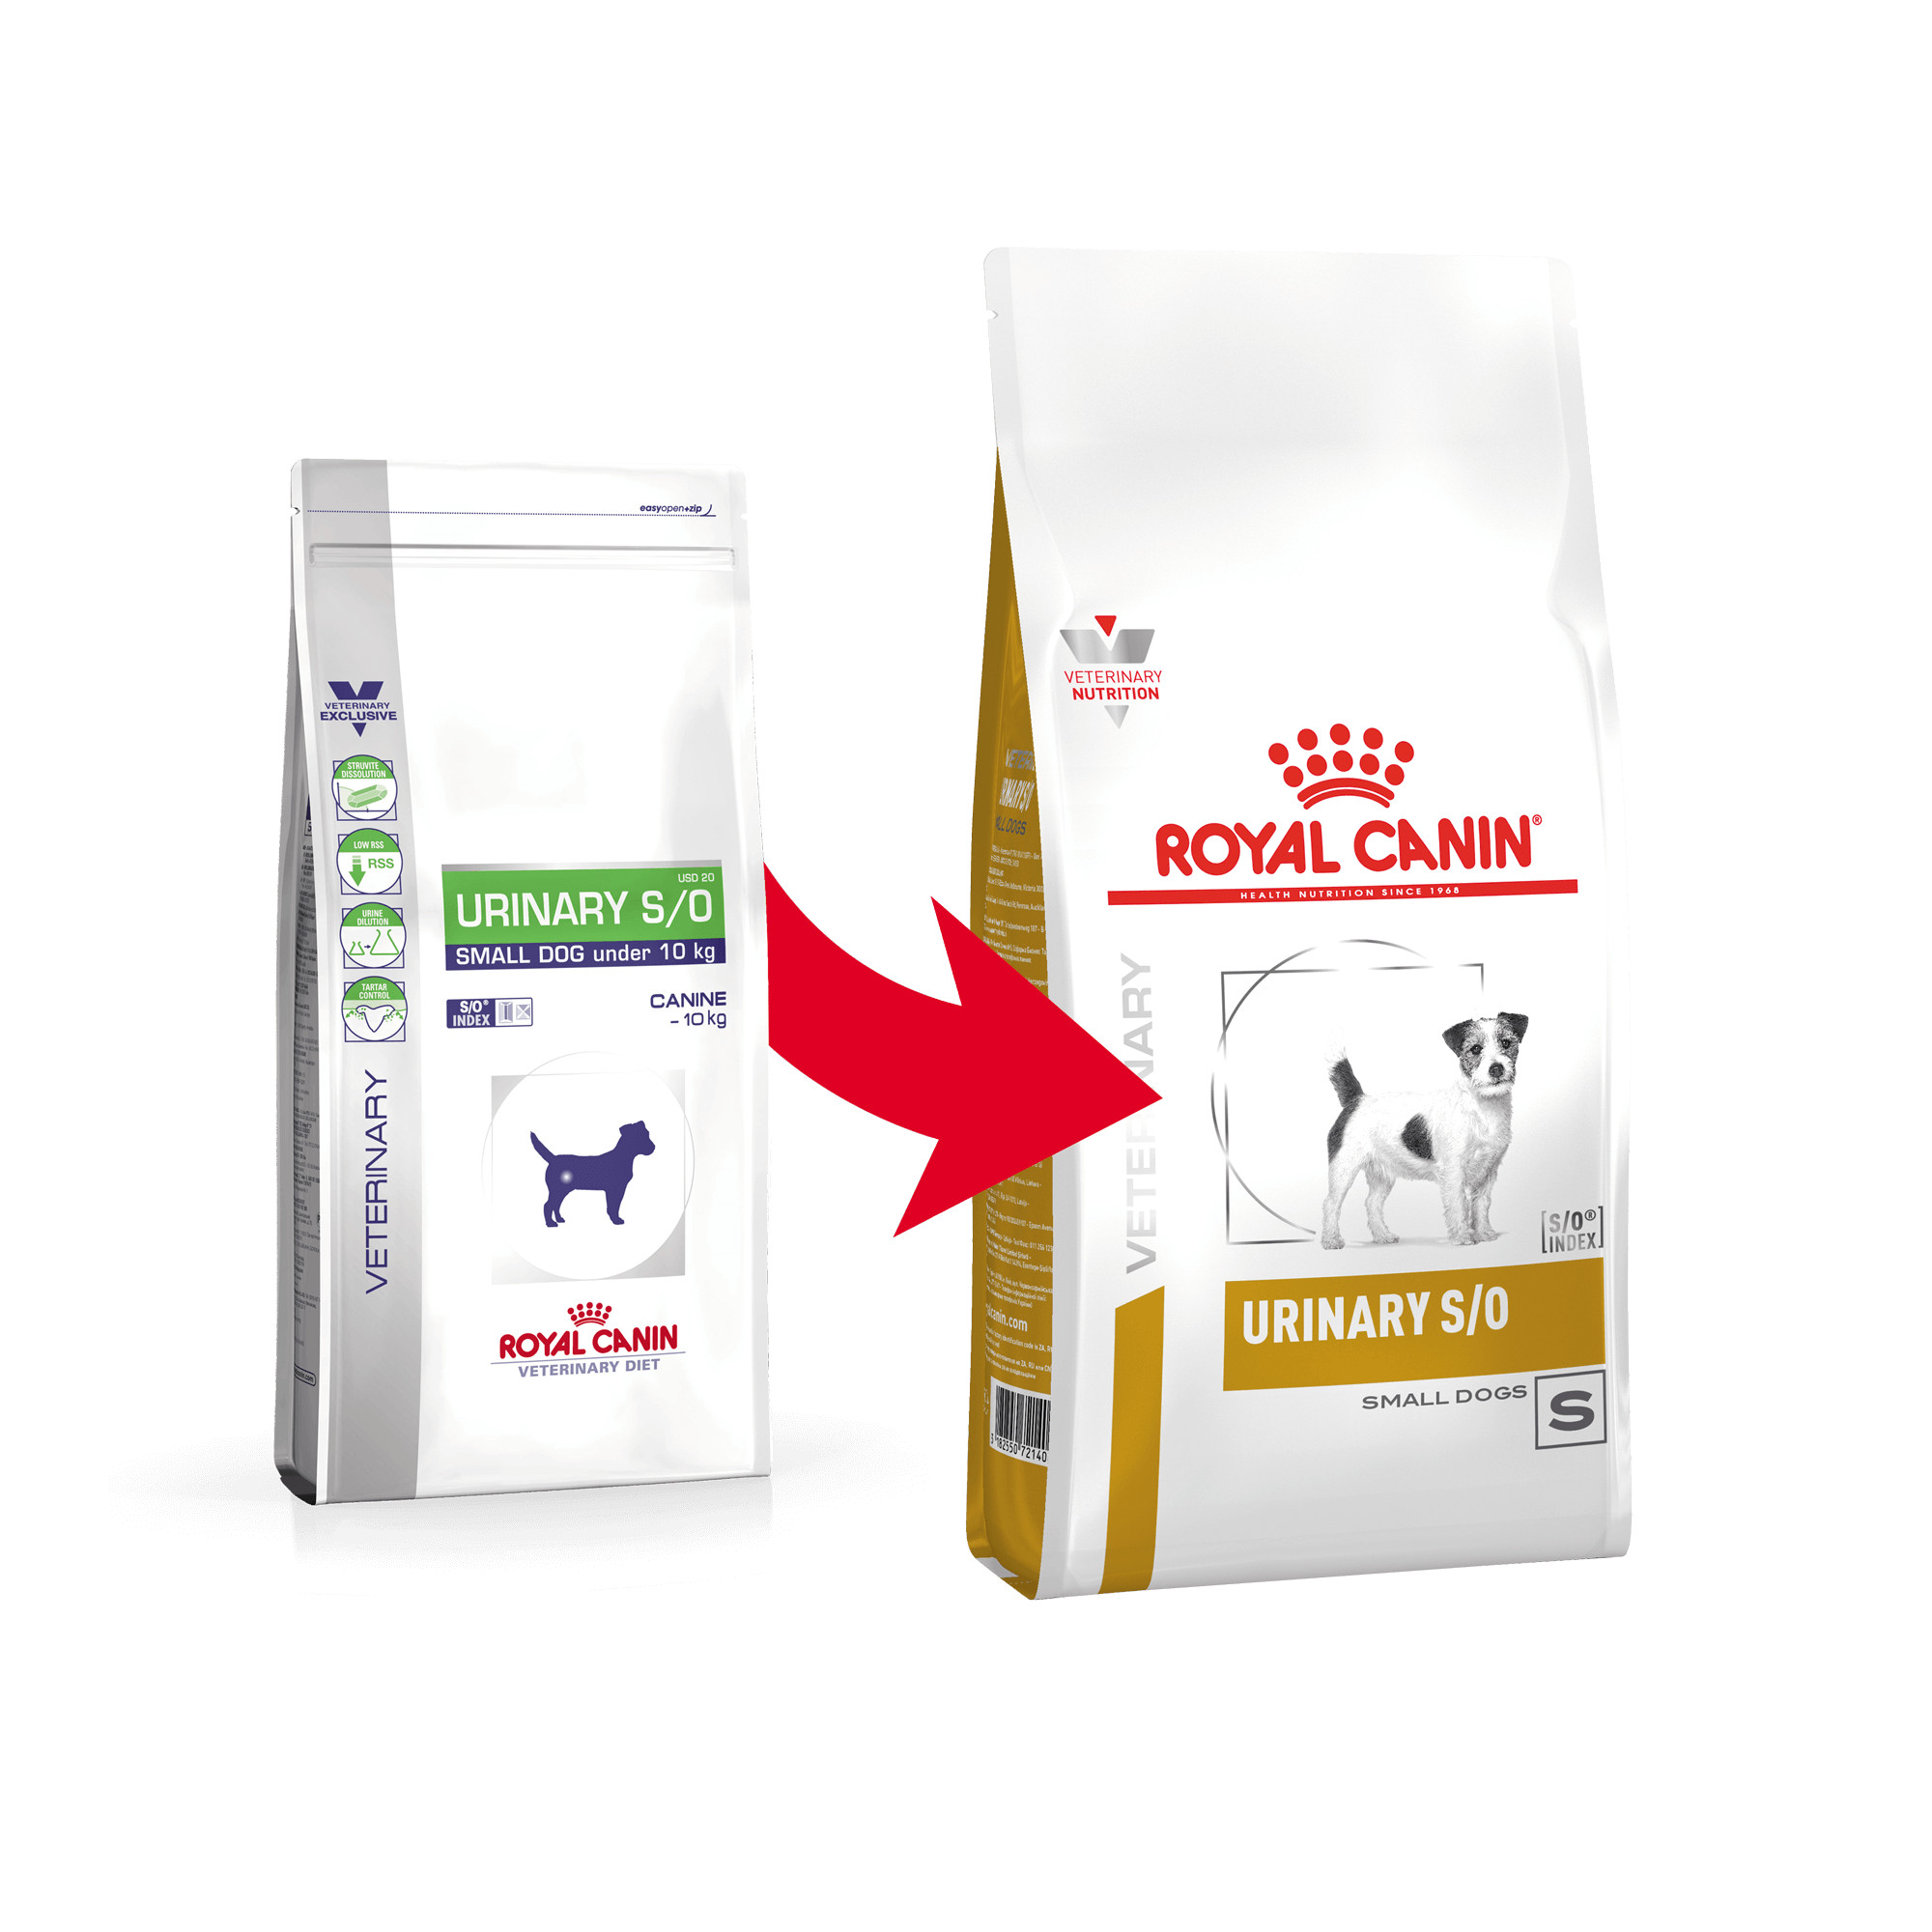 Royal Canin Veterinary Urinary S/O Small Dog hundefoder